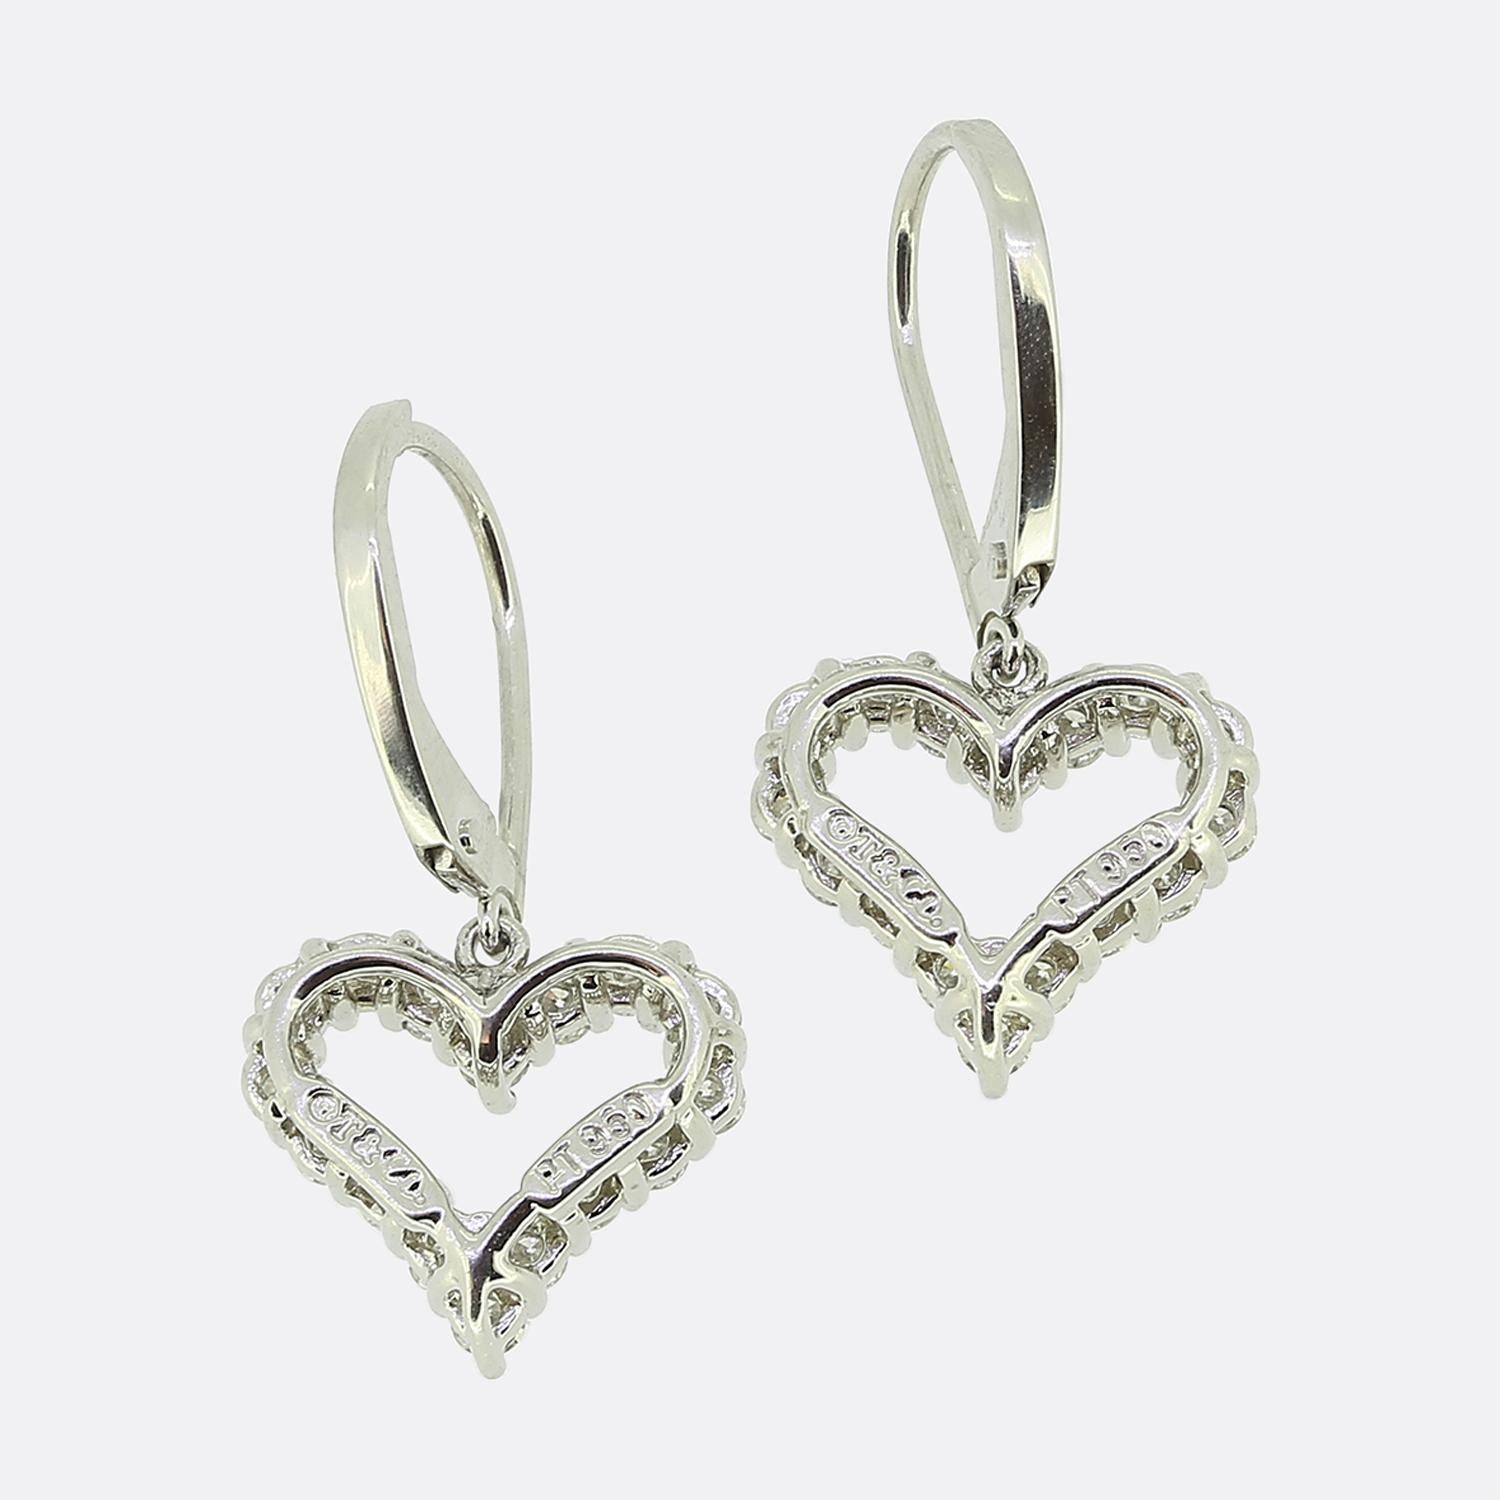 Voici une ravissante paire de boucles d'oreilles pendantes en diamant du créateur de bijoux de renommée mondiale Tiffany & Co. Chaque pièce a été fabriquée en platine en forme de cœur d'amour ouvert, les deux cadres étant sertis d'une seule ligne de